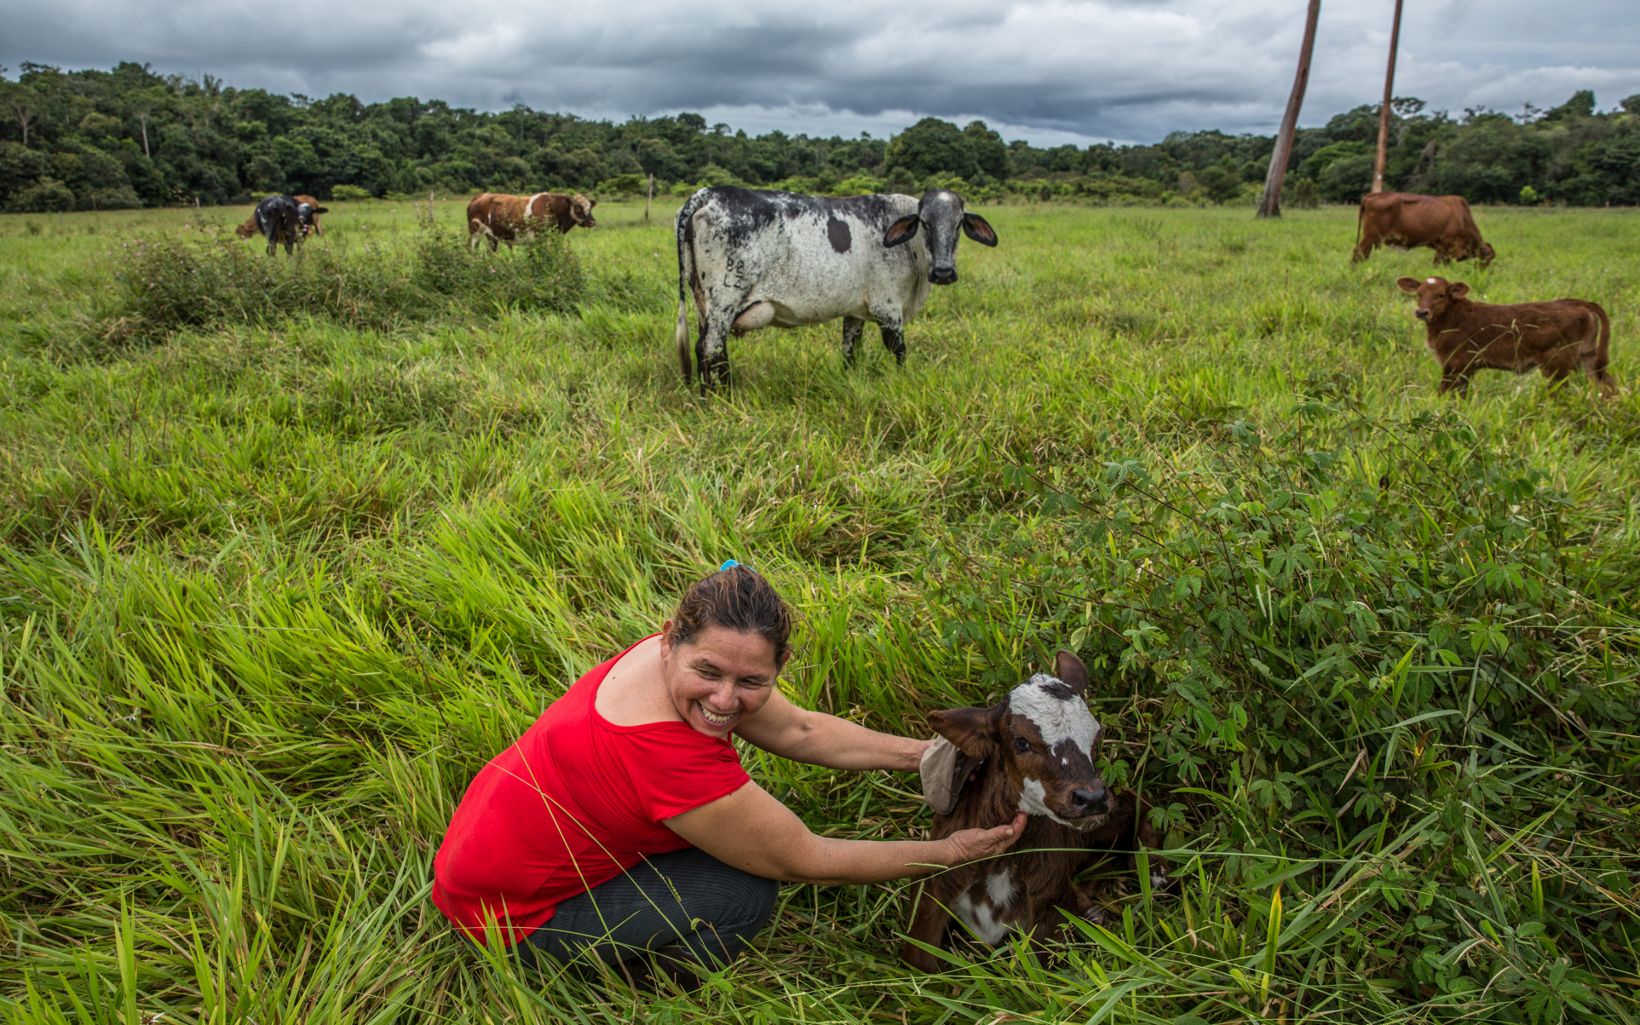 
                
                  Conociendo el paisaje Mercedes ve las conexiones que la unen con su bosque conservado, con sus animales, que le dan de comer, y con su tierra, y espera protegerlo toda la vida.
                  © TNC Colombia
                
              